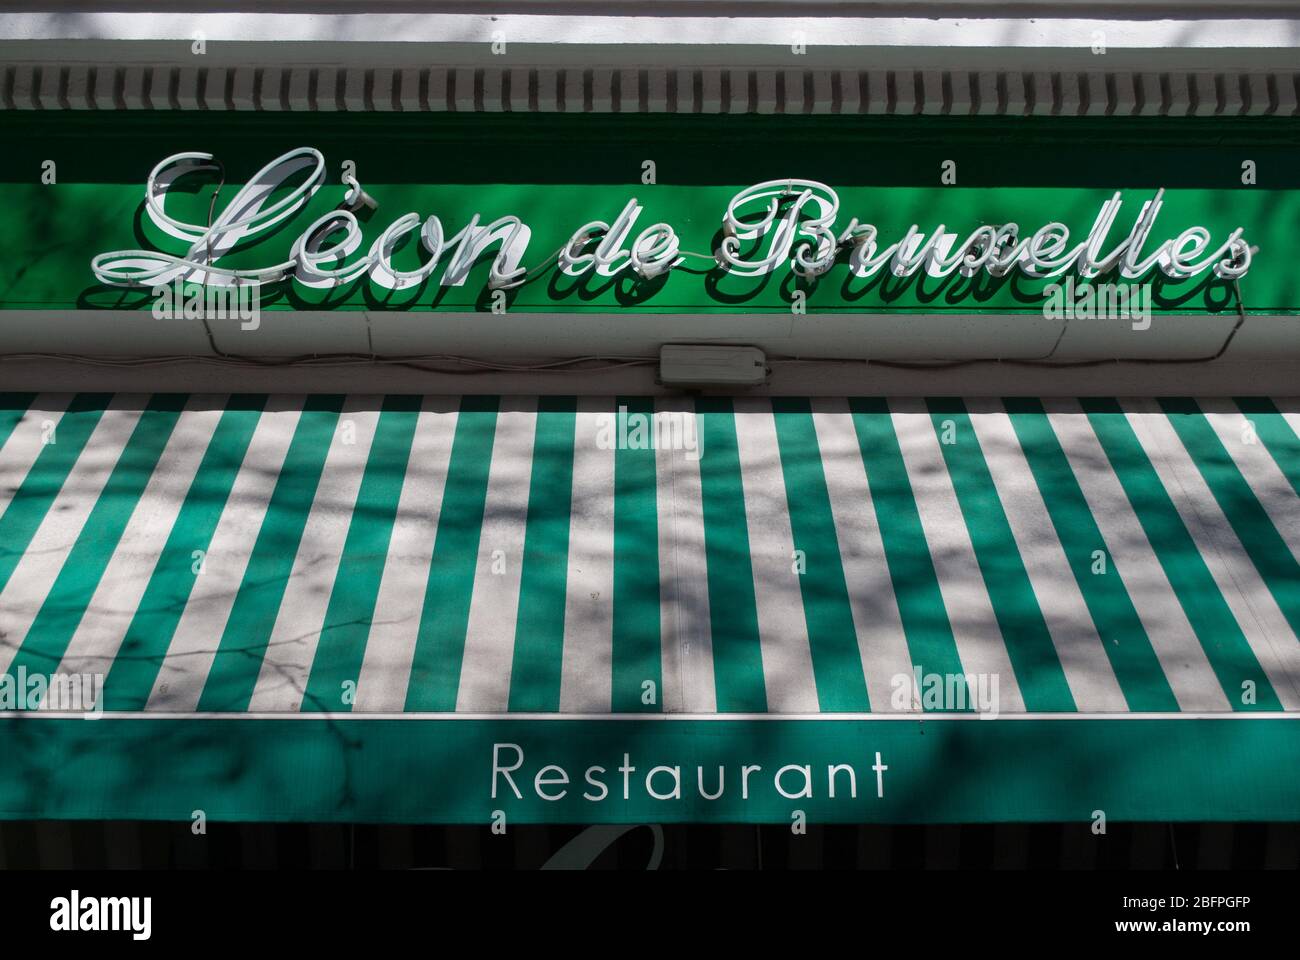 Green Cafe Restaurant Al Fresco Dining Leon de Bruxelles, 24 Cambridge Circus, London, WC2H Stock Photo